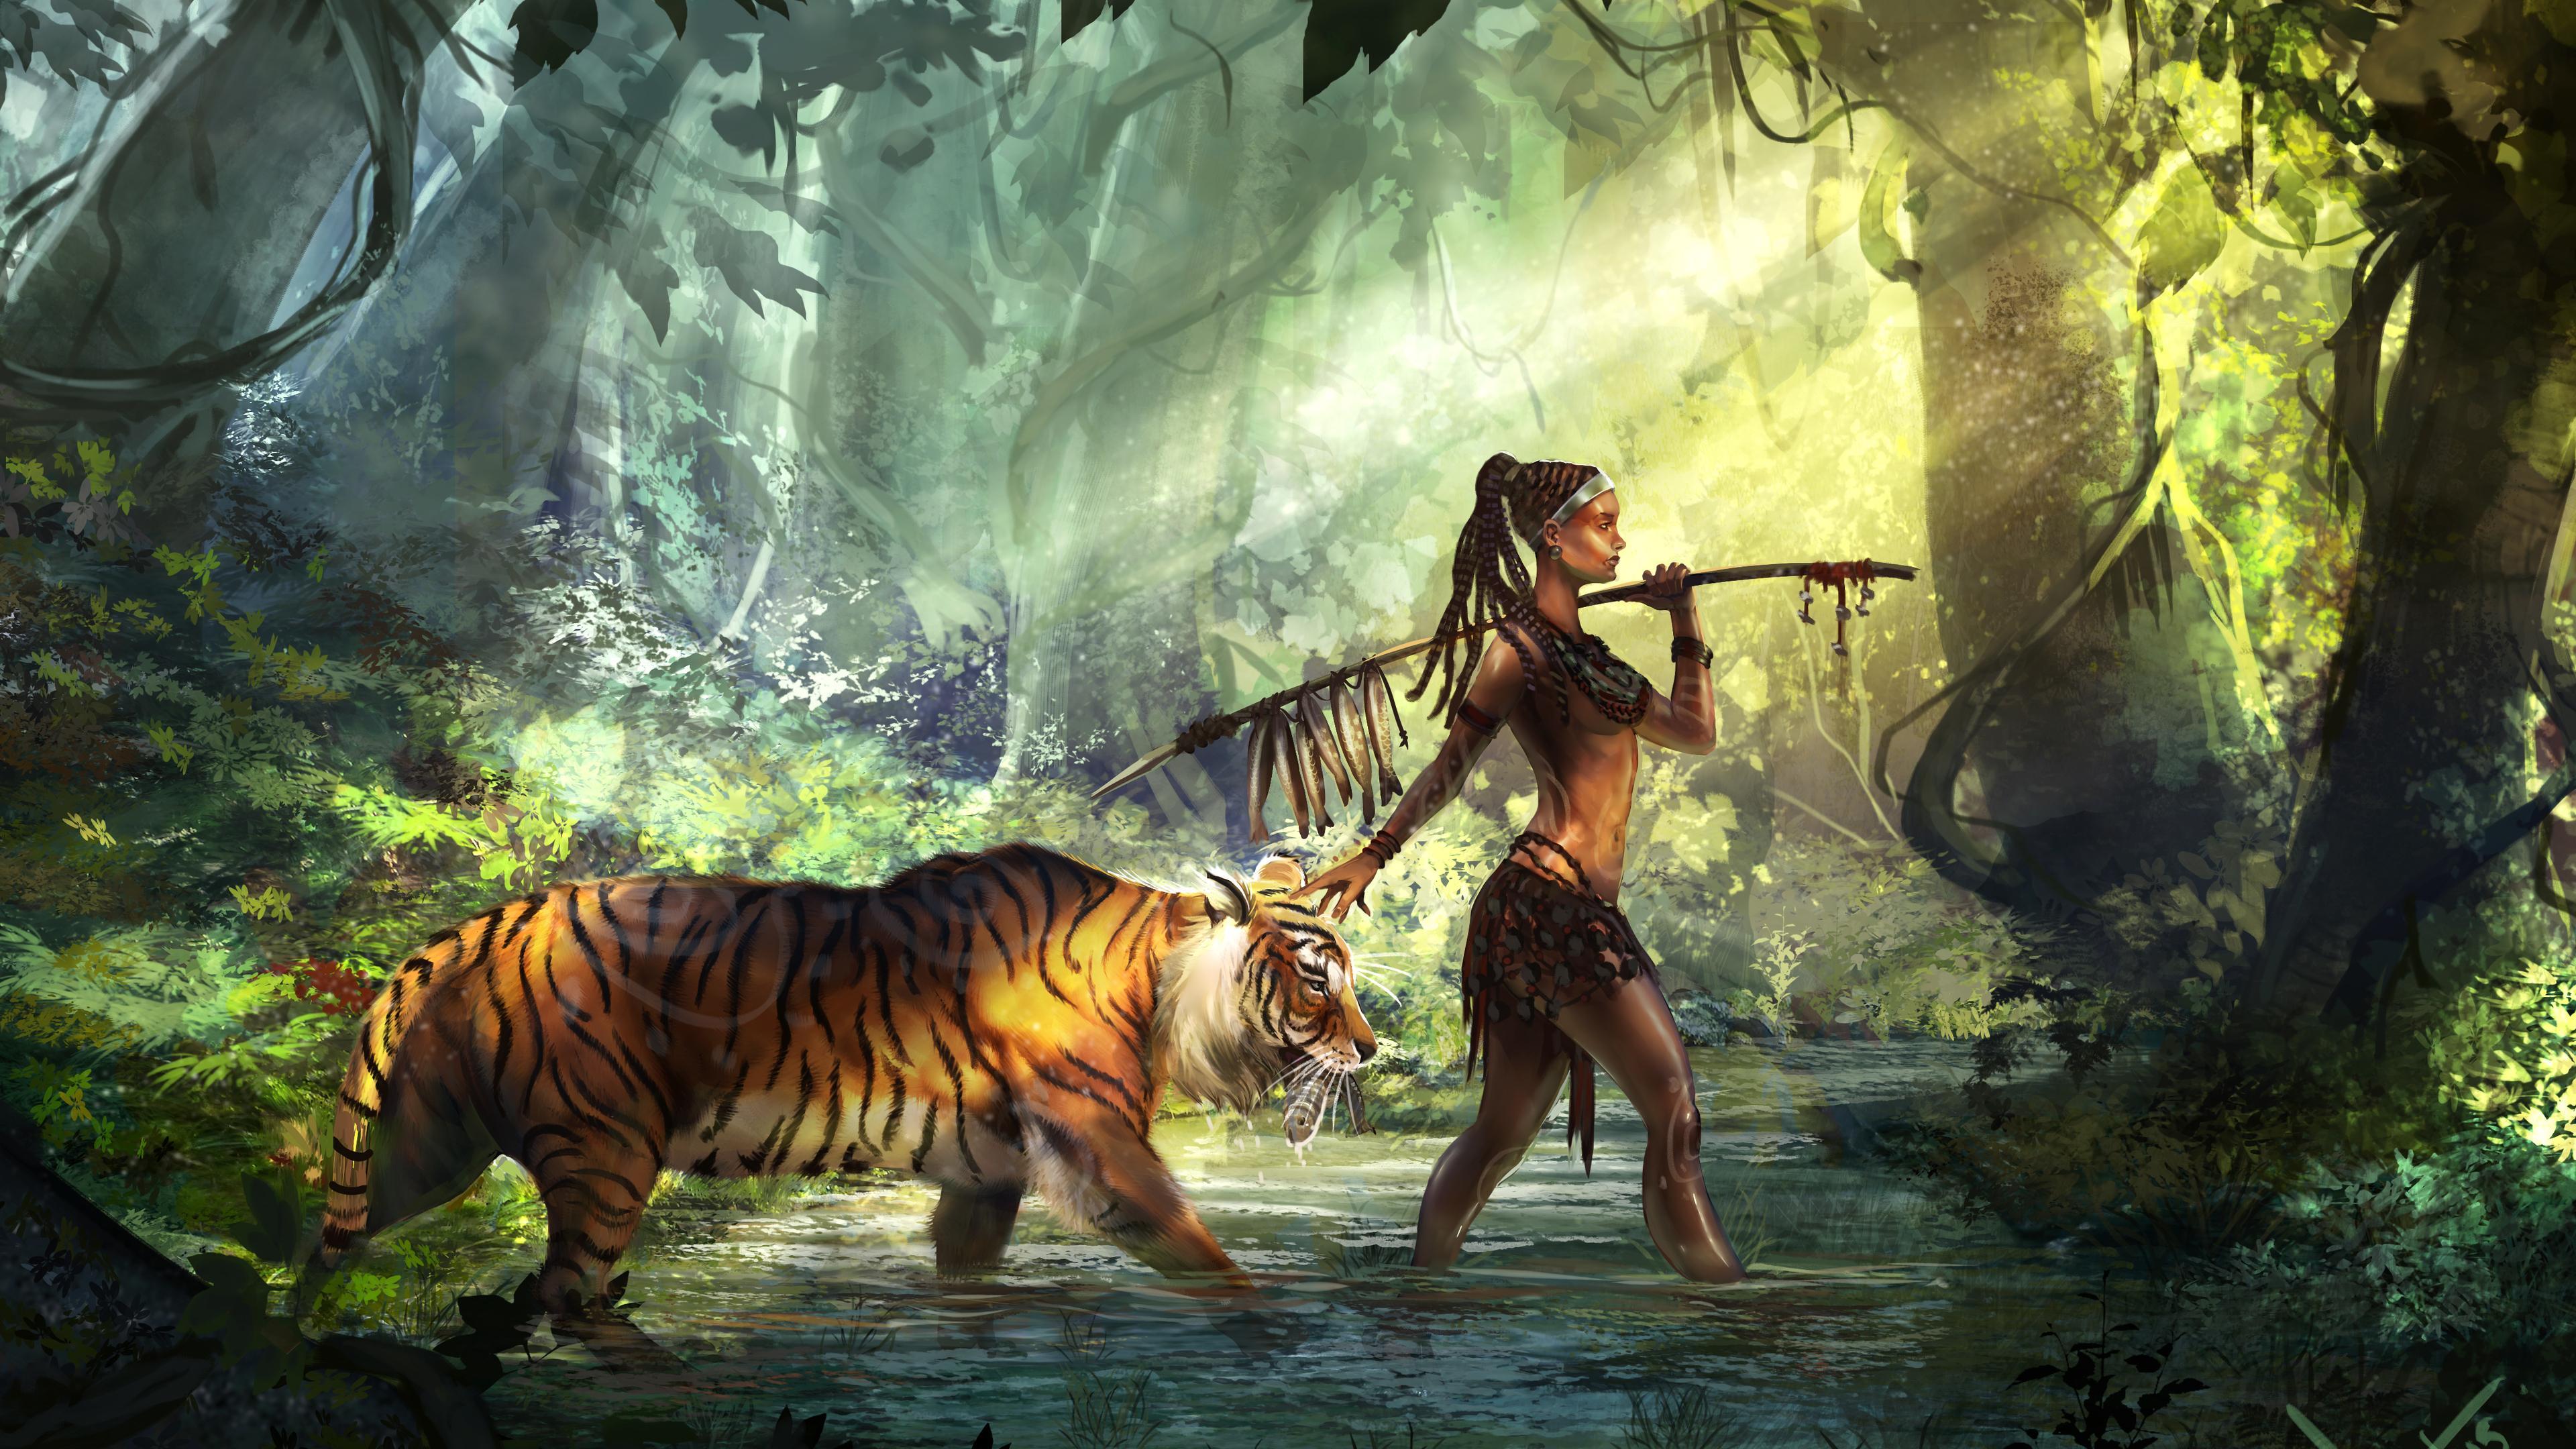 Tiger Guardian 4k 4k HD 4k Wallpaper, Image, Background